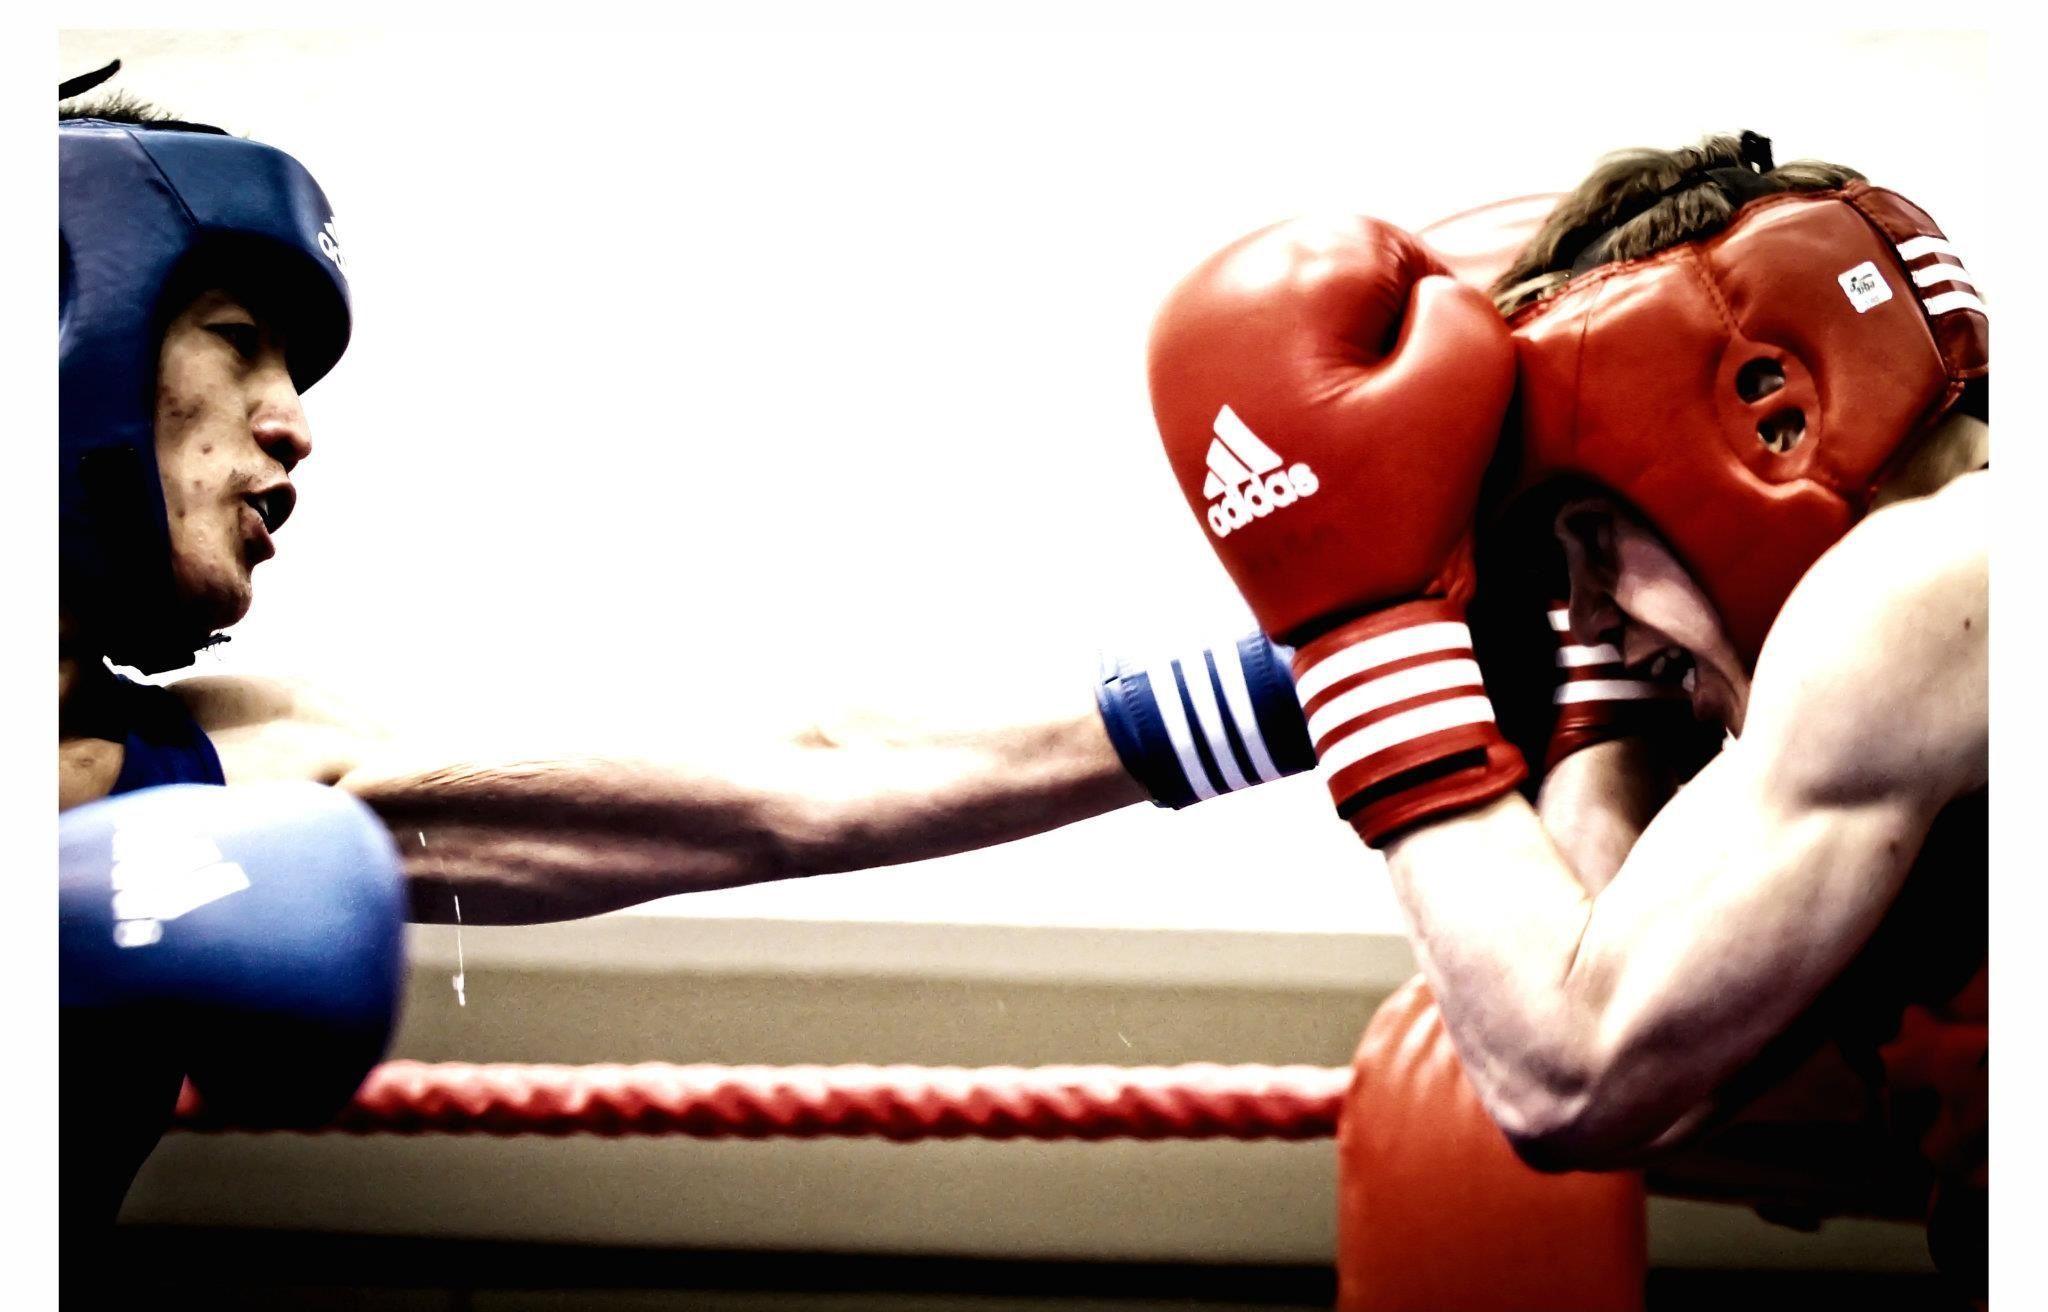 Awesome Boxing Image